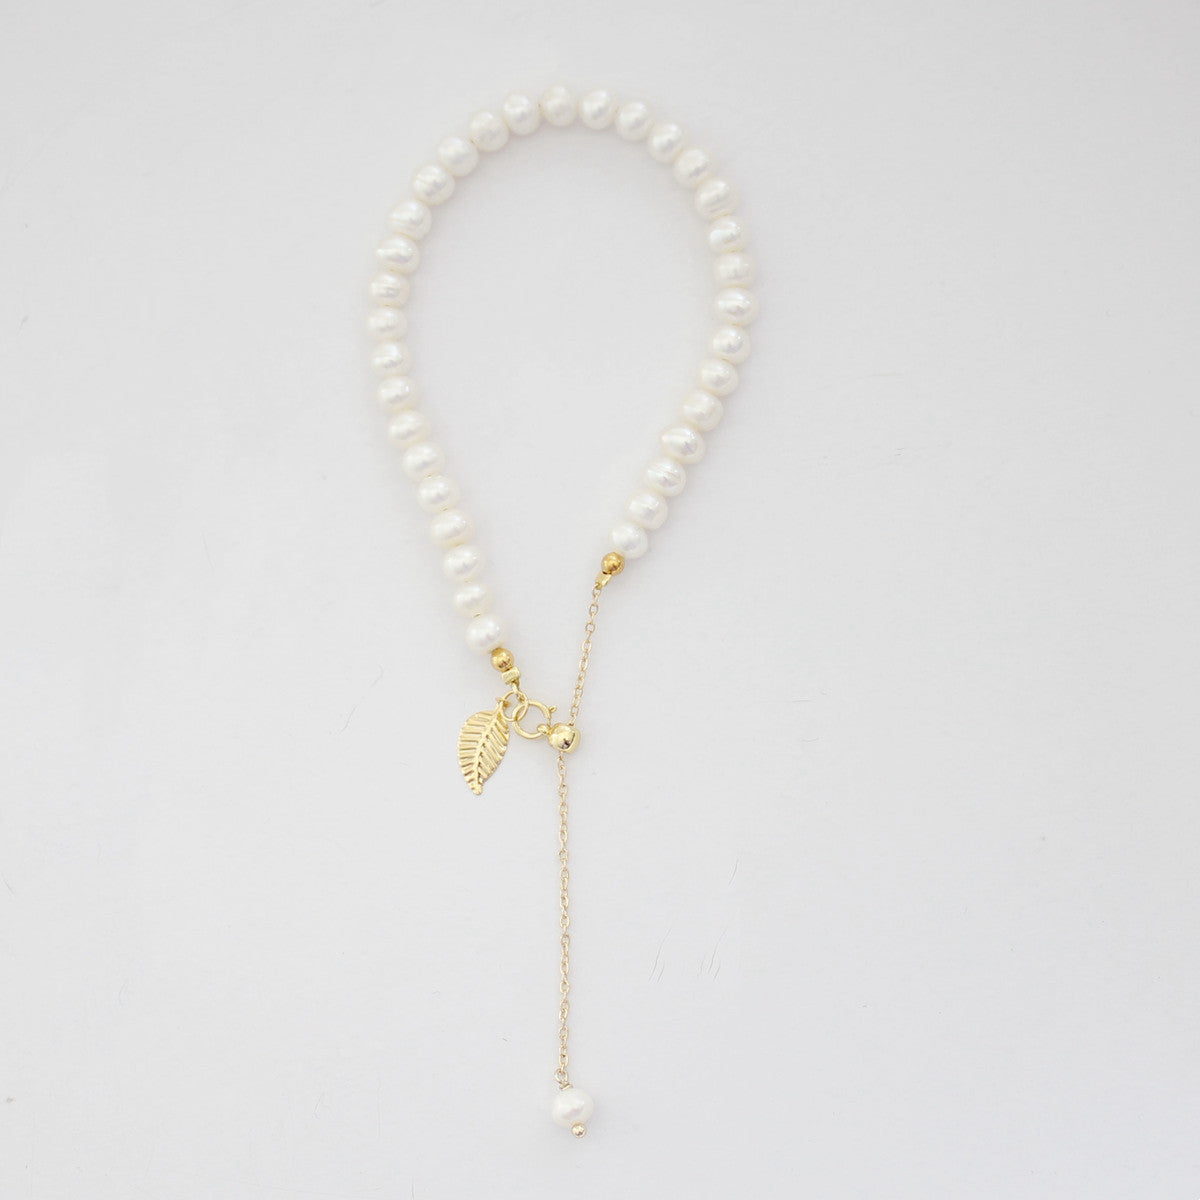 Natural Freshwater Pearl Bracelet | Niche Design, Golden Branches, 14K Gold